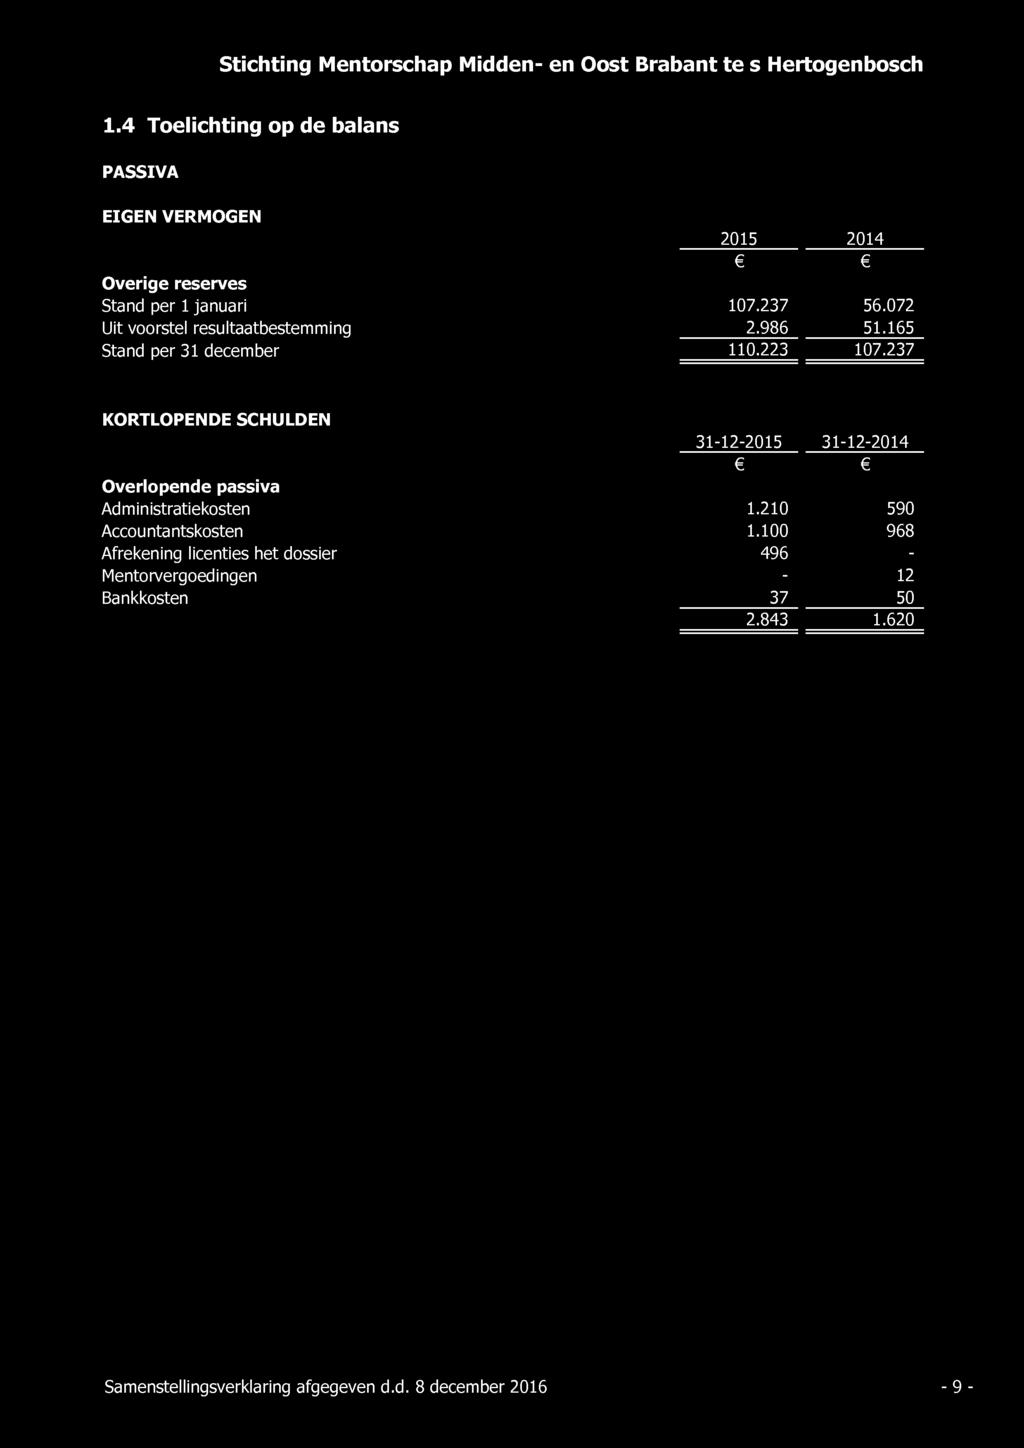 1.4 Toelichting op de balans PASSIVA EIGEN VERMOGEN Overige reserves Stand per 1 januari Uit voorstel resultaatbestemming Stand per 31 december 2015 2014 107.237 56.072 2.986 51.165 110.223 107.